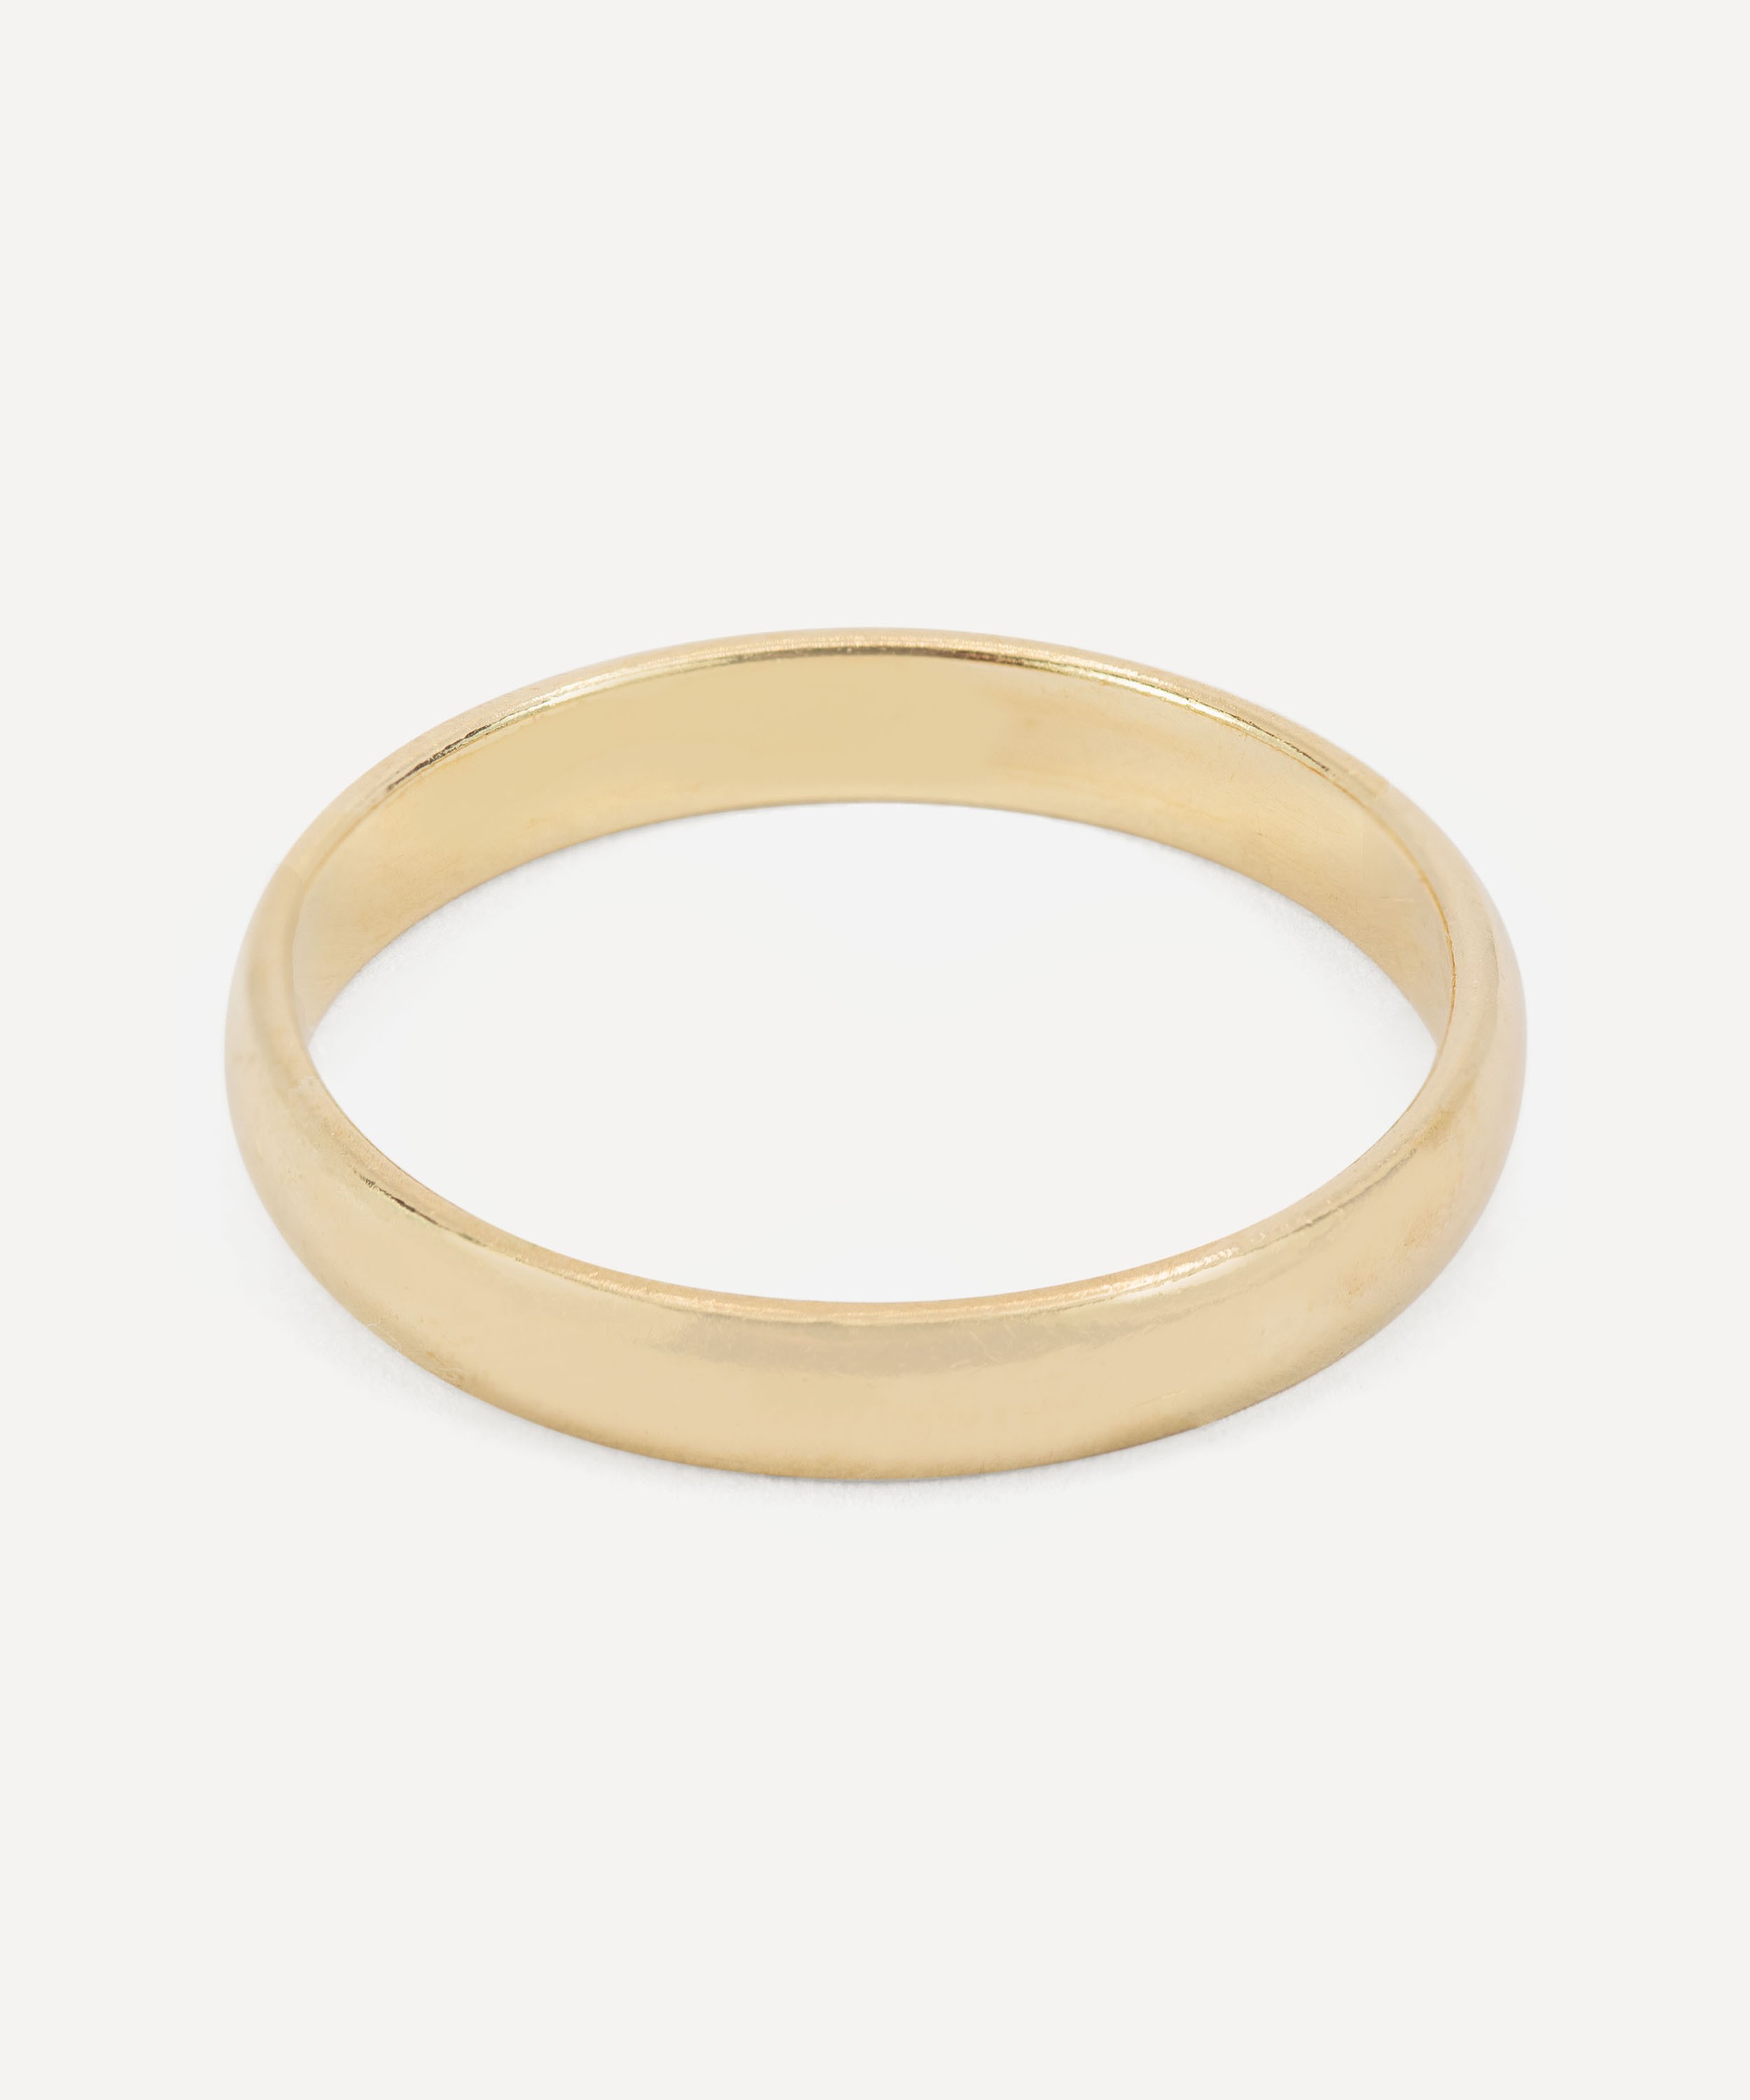 Kojis - 14ct Gold 3mm Wedding Band Ring image number null